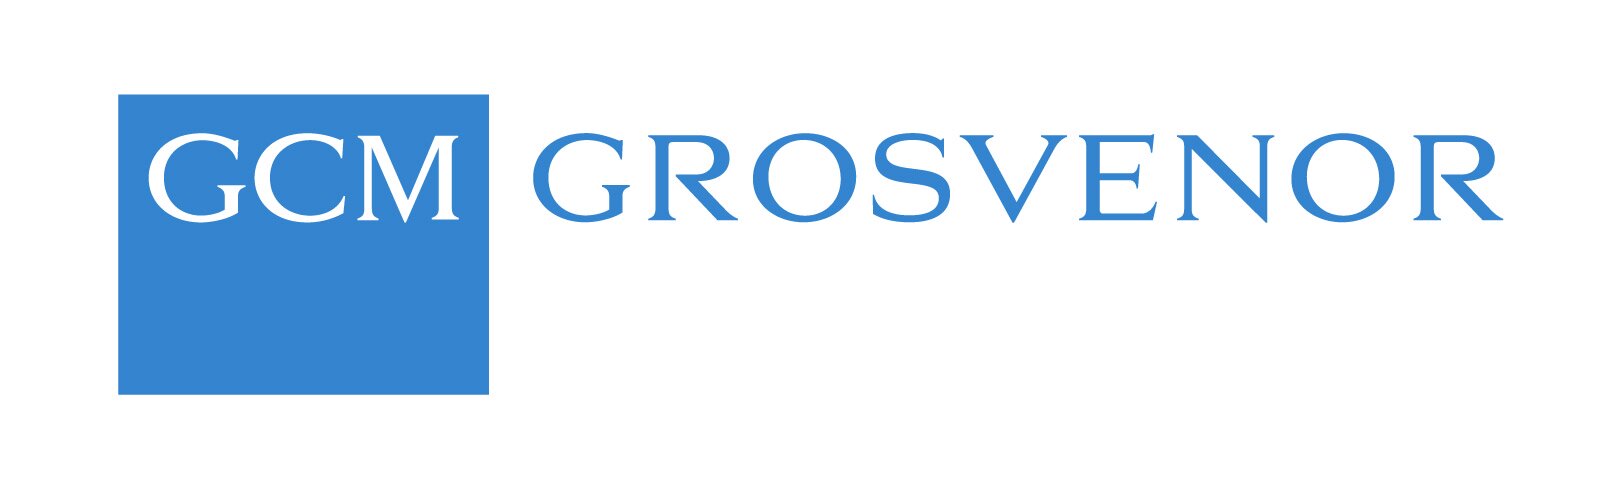 GCM Grosvenor Logo - High Res.jpg